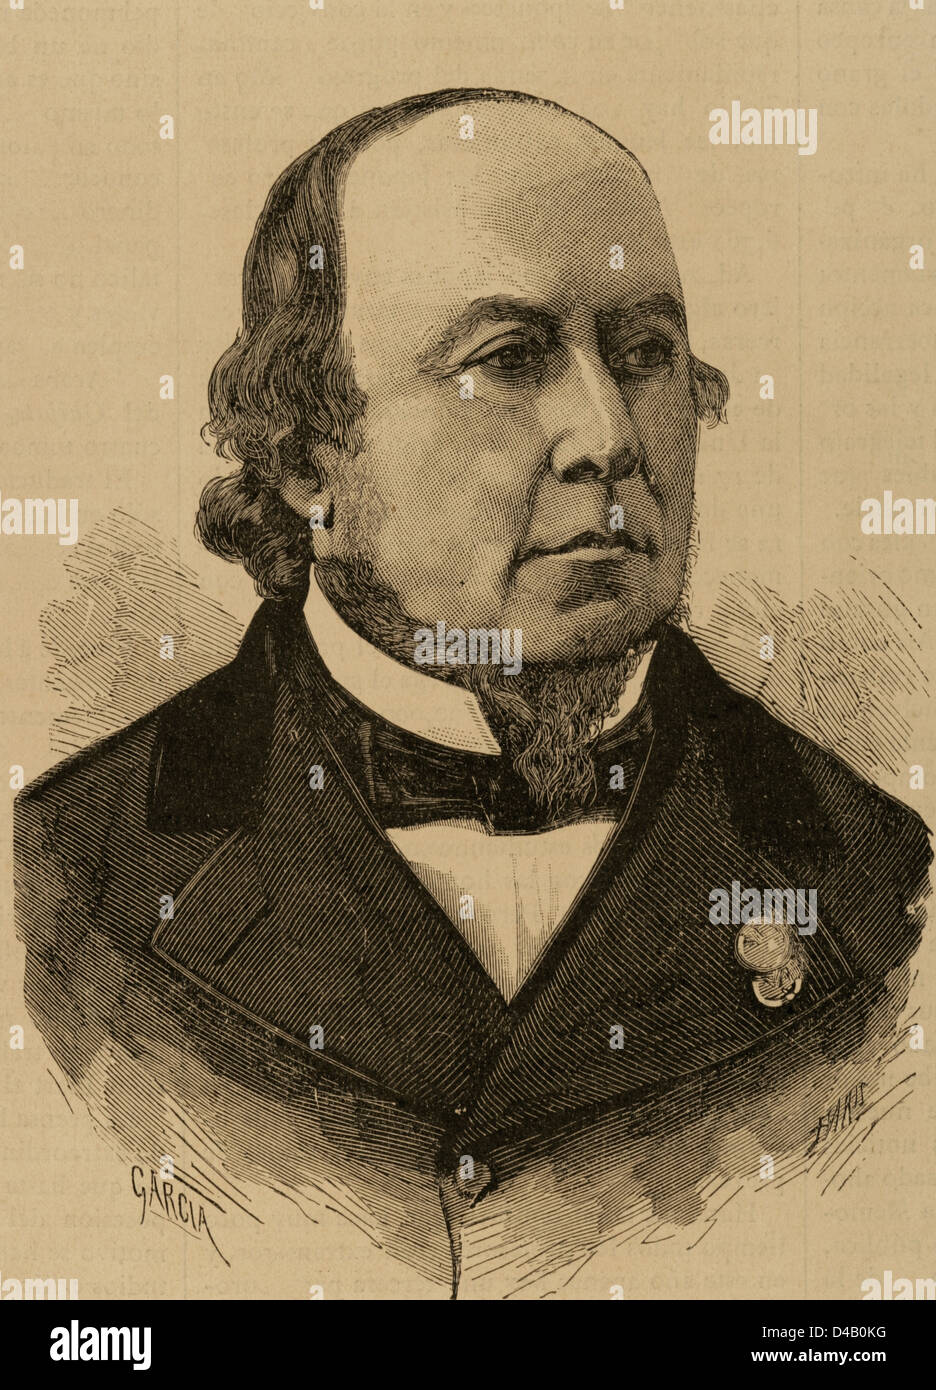 Narciso Carbo de Aloy (1826-1890). Spanischer Arzt und Forscher. Gravur. Stockfoto